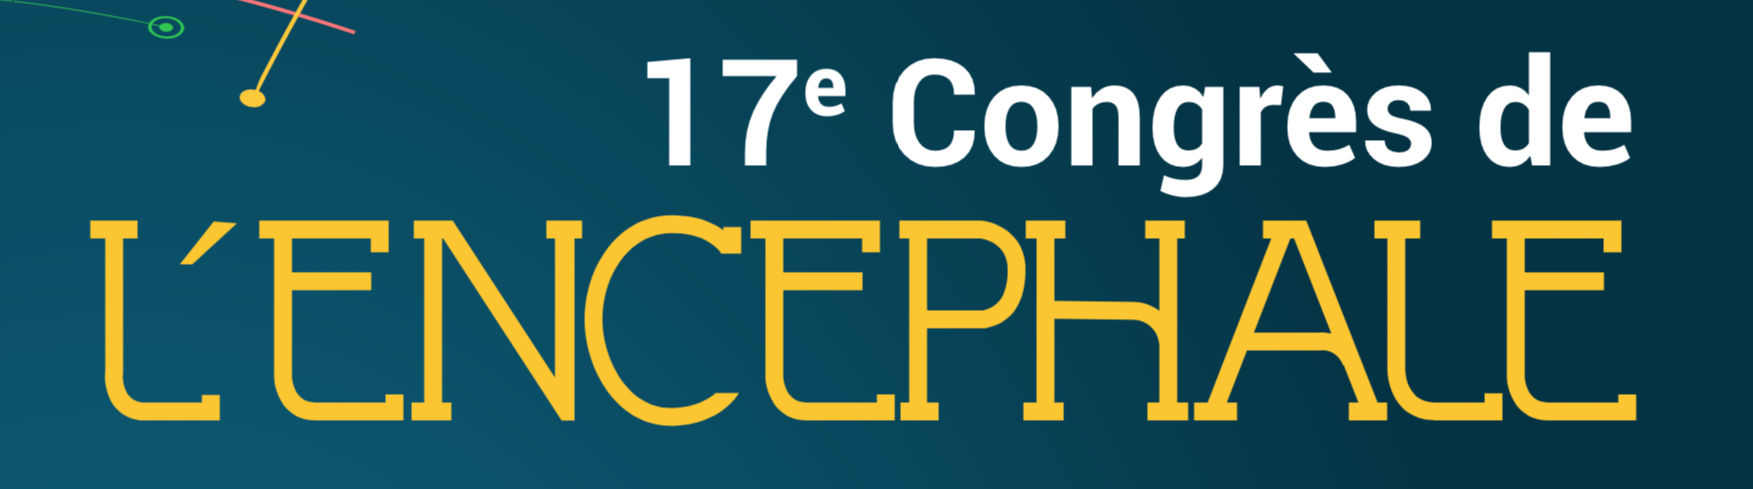 17eme congrès de l'encéphale 2019